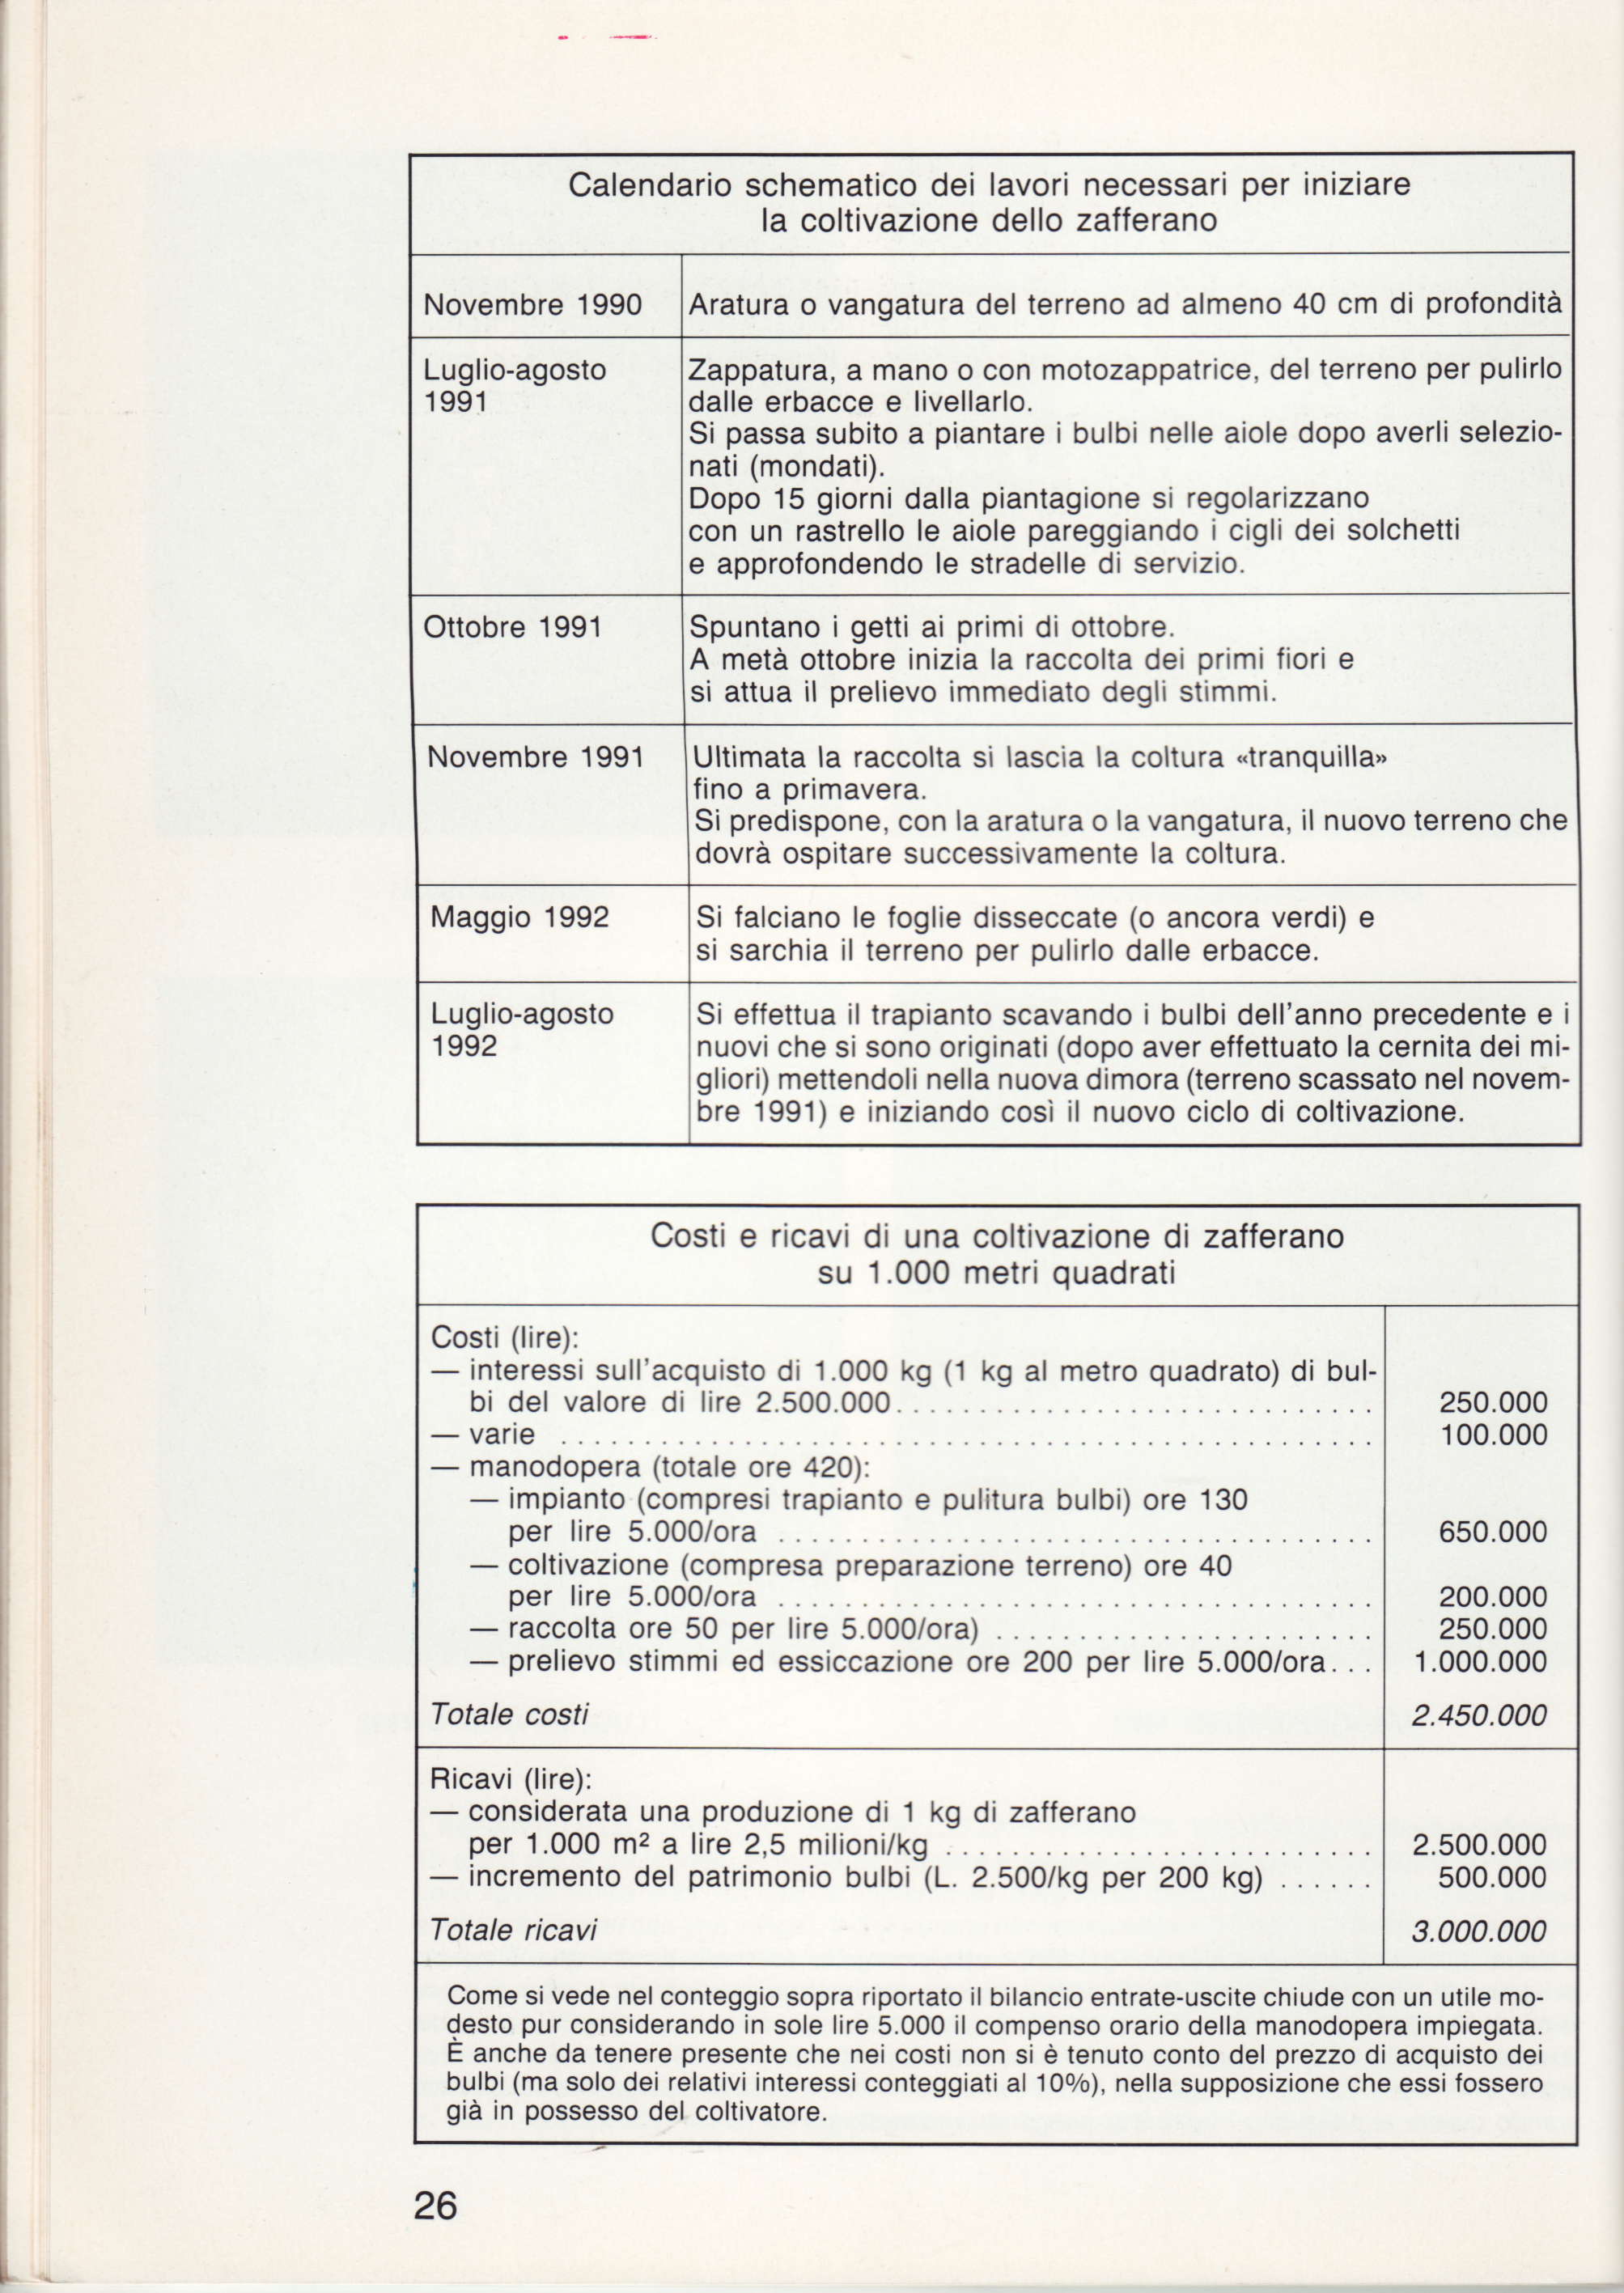 Calendario schematico dei lavori necessari per iniziare la coltivazione dello zafferano Novembre 1990 Luglio-agosto '1991 Ottobre 1991 Novembre 1991 Maggio 1992 Luglio-agosto 1992 Aratura o vangatura